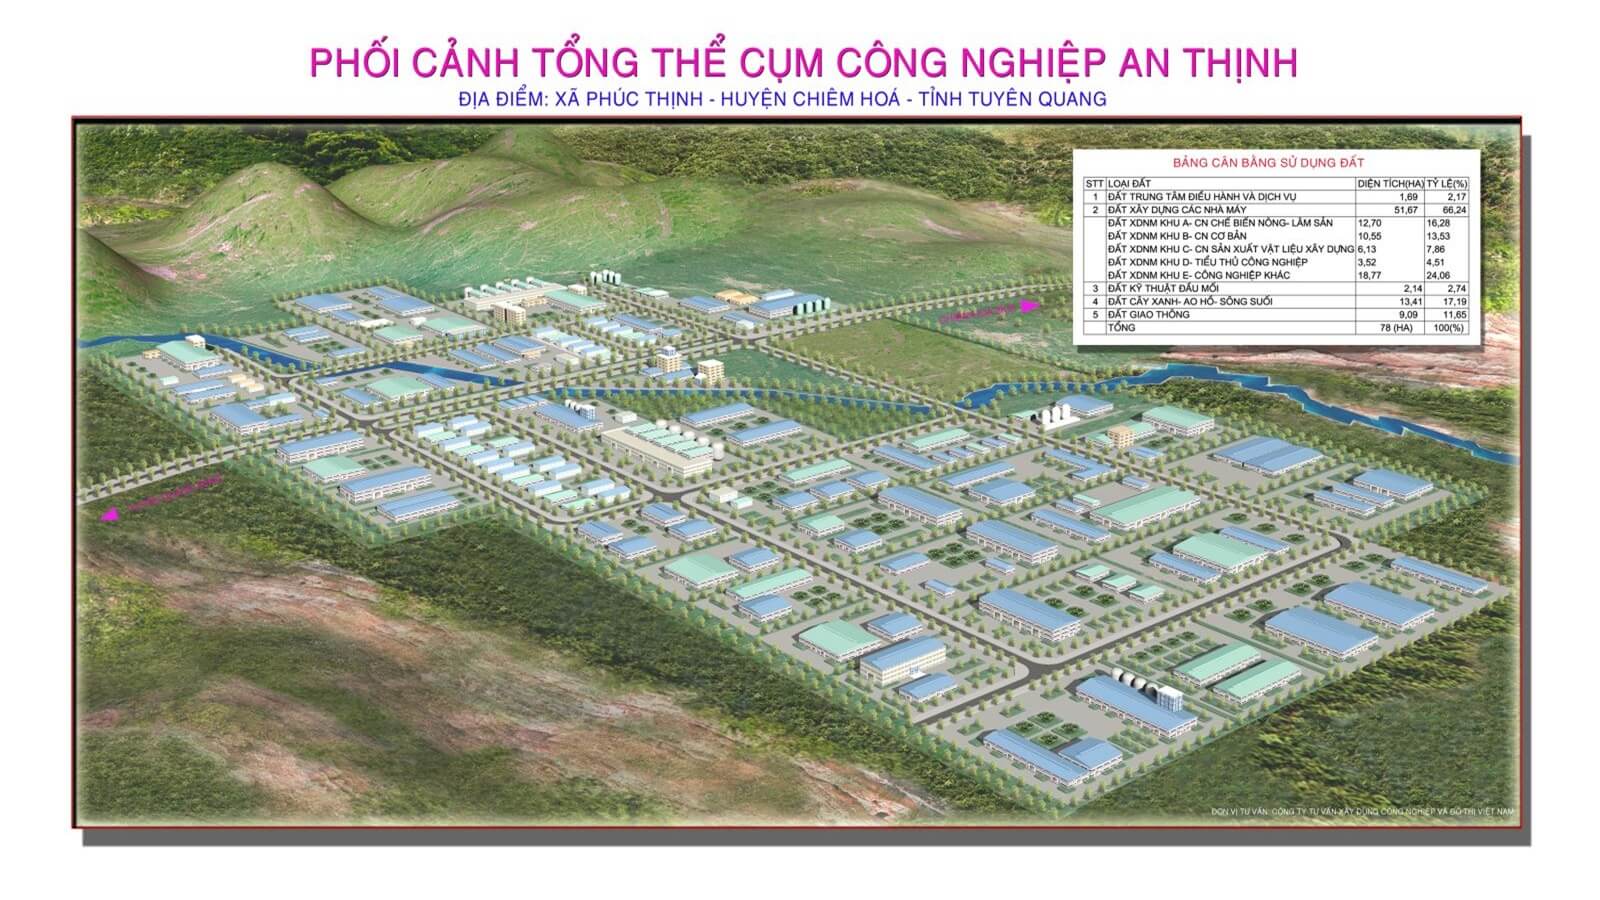 Cụm công nghiệp  An Thịnh –  Tuyên Quang  